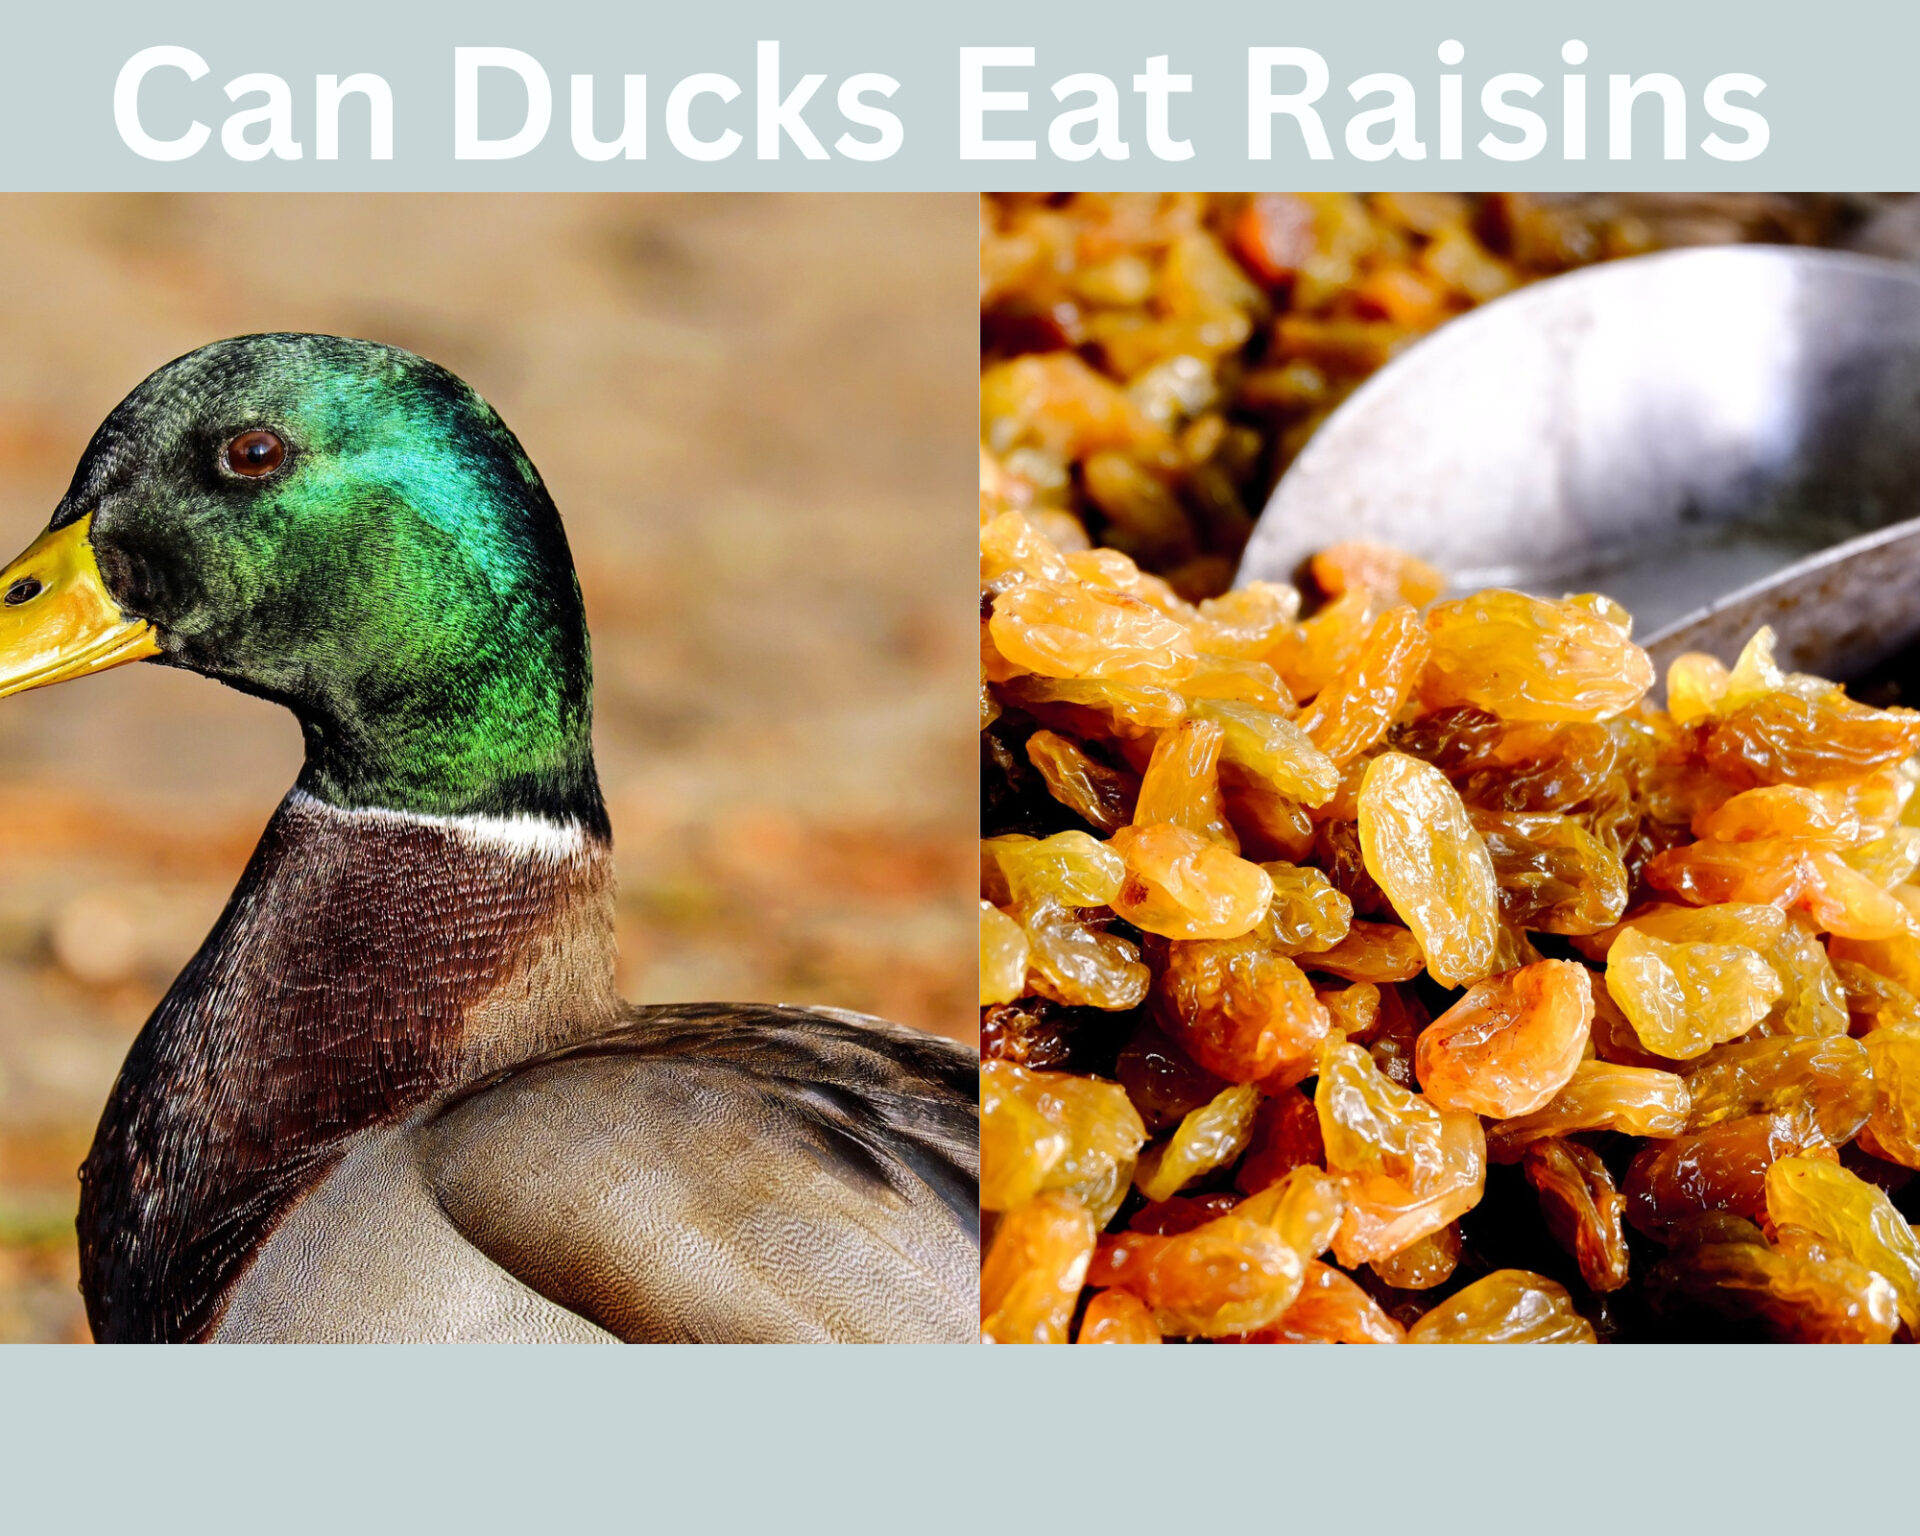 Can Ducks Eat Raisins?